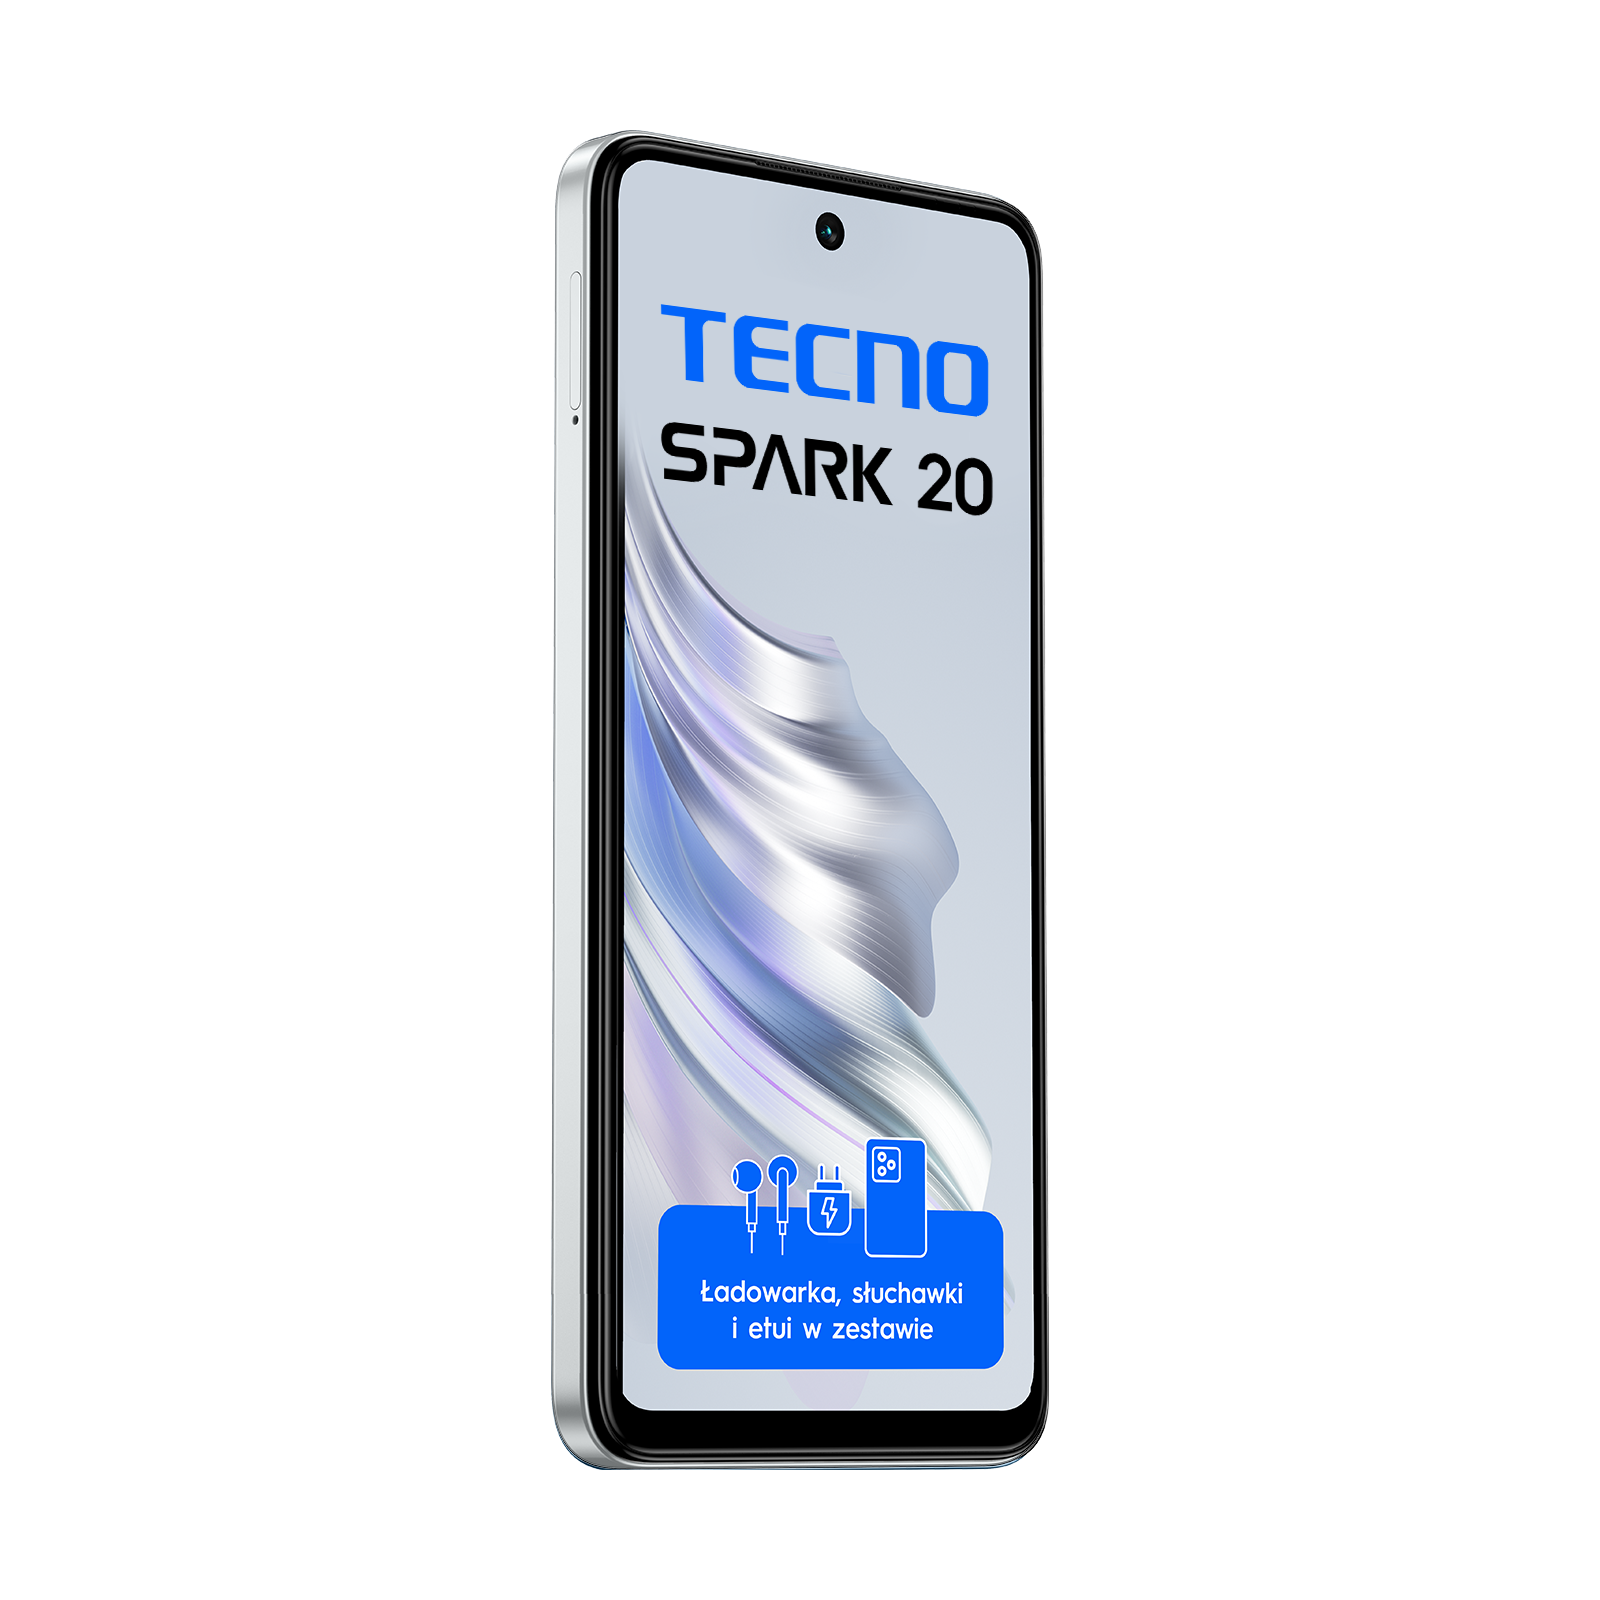 TECNO SPARK 20